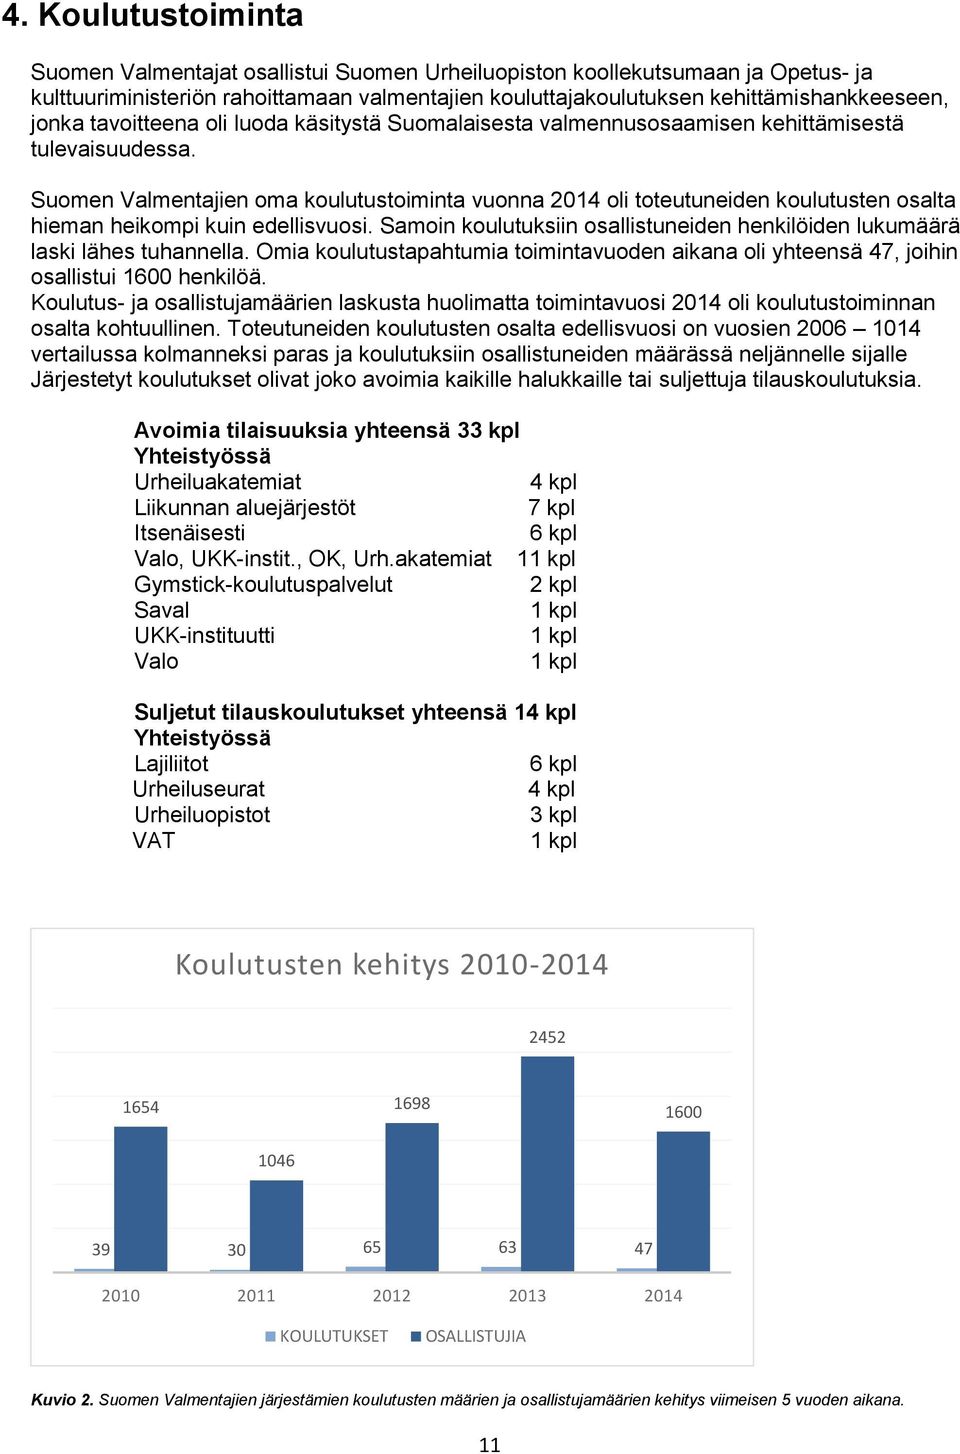 Suomen Valmentajien oma koulutustoiminta vuonna 2014 oli toteutuneiden koulutusten osalta hieman heikompi kuin edellisvuosi.